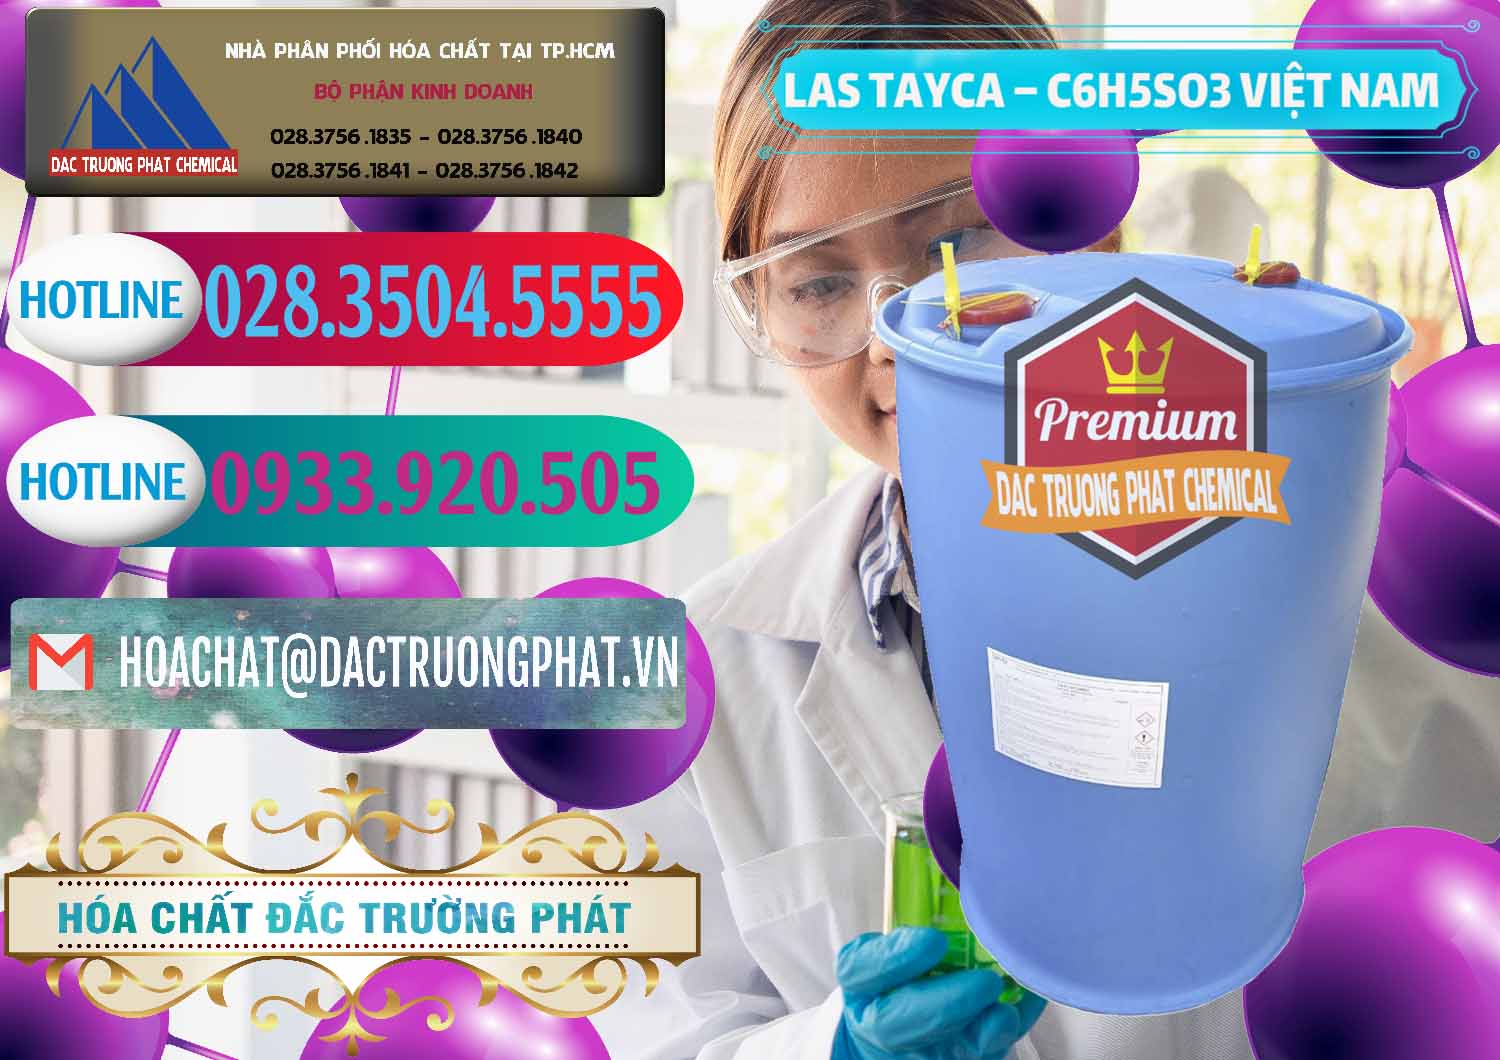 Nơi chuyên cung ứng _ bán Chất tạo bọt Las Tayca Việt Nam - 0305 - Cty cung cấp và kinh doanh hóa chất tại TP.HCM - truongphat.vn